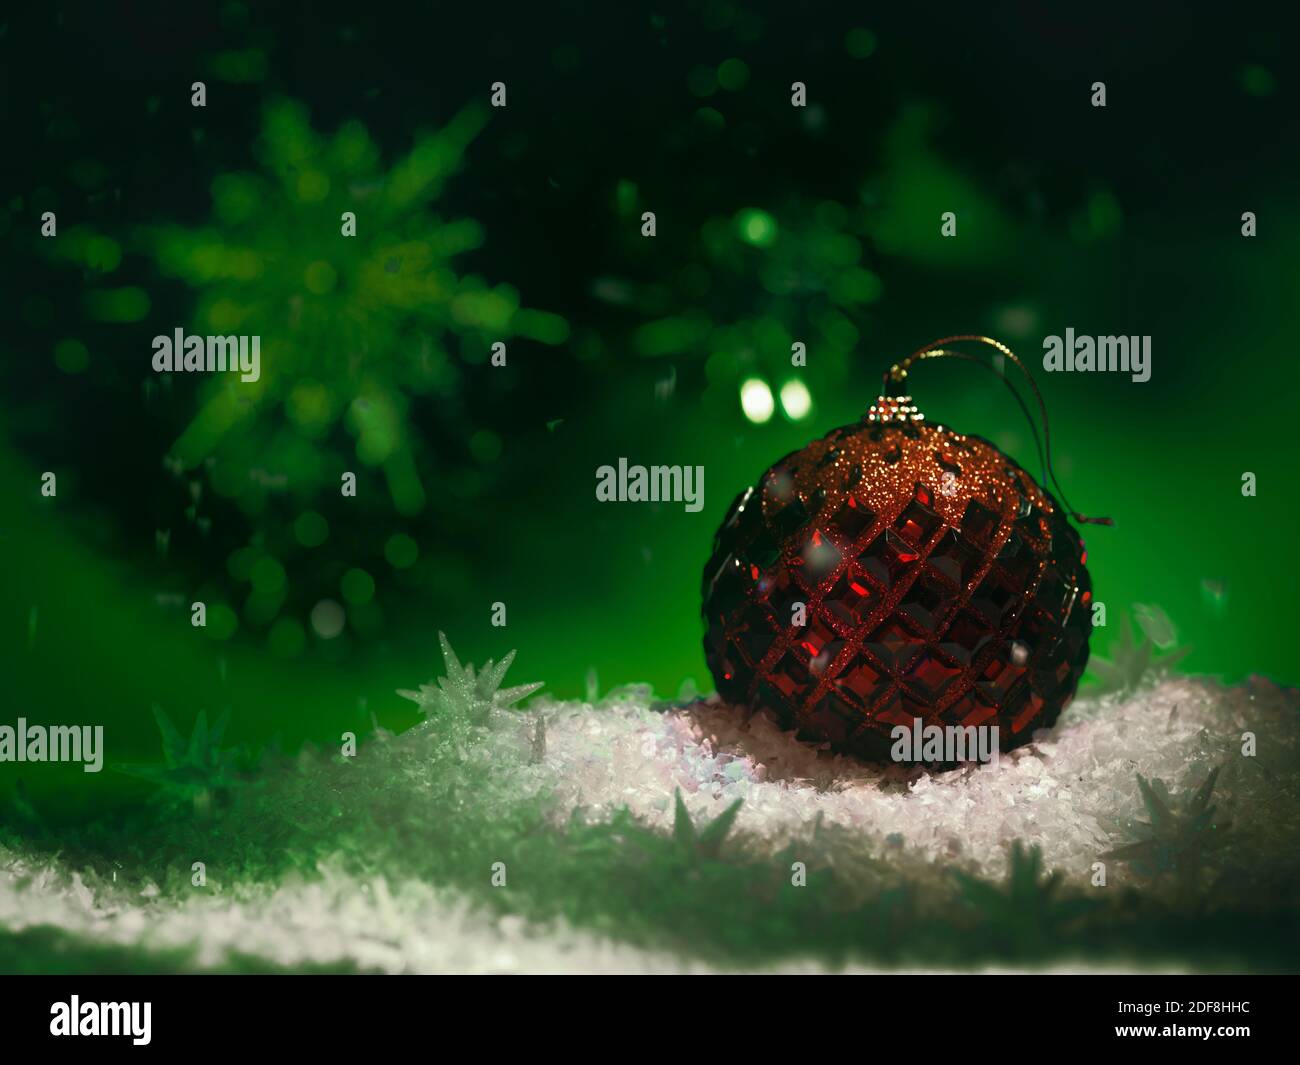 Décoration de Noël rouge sur fond vert avec neige blanche dans des environnements sombres. Vacances artistiques d'hiver, concept du nouvel an. Banque D'Images